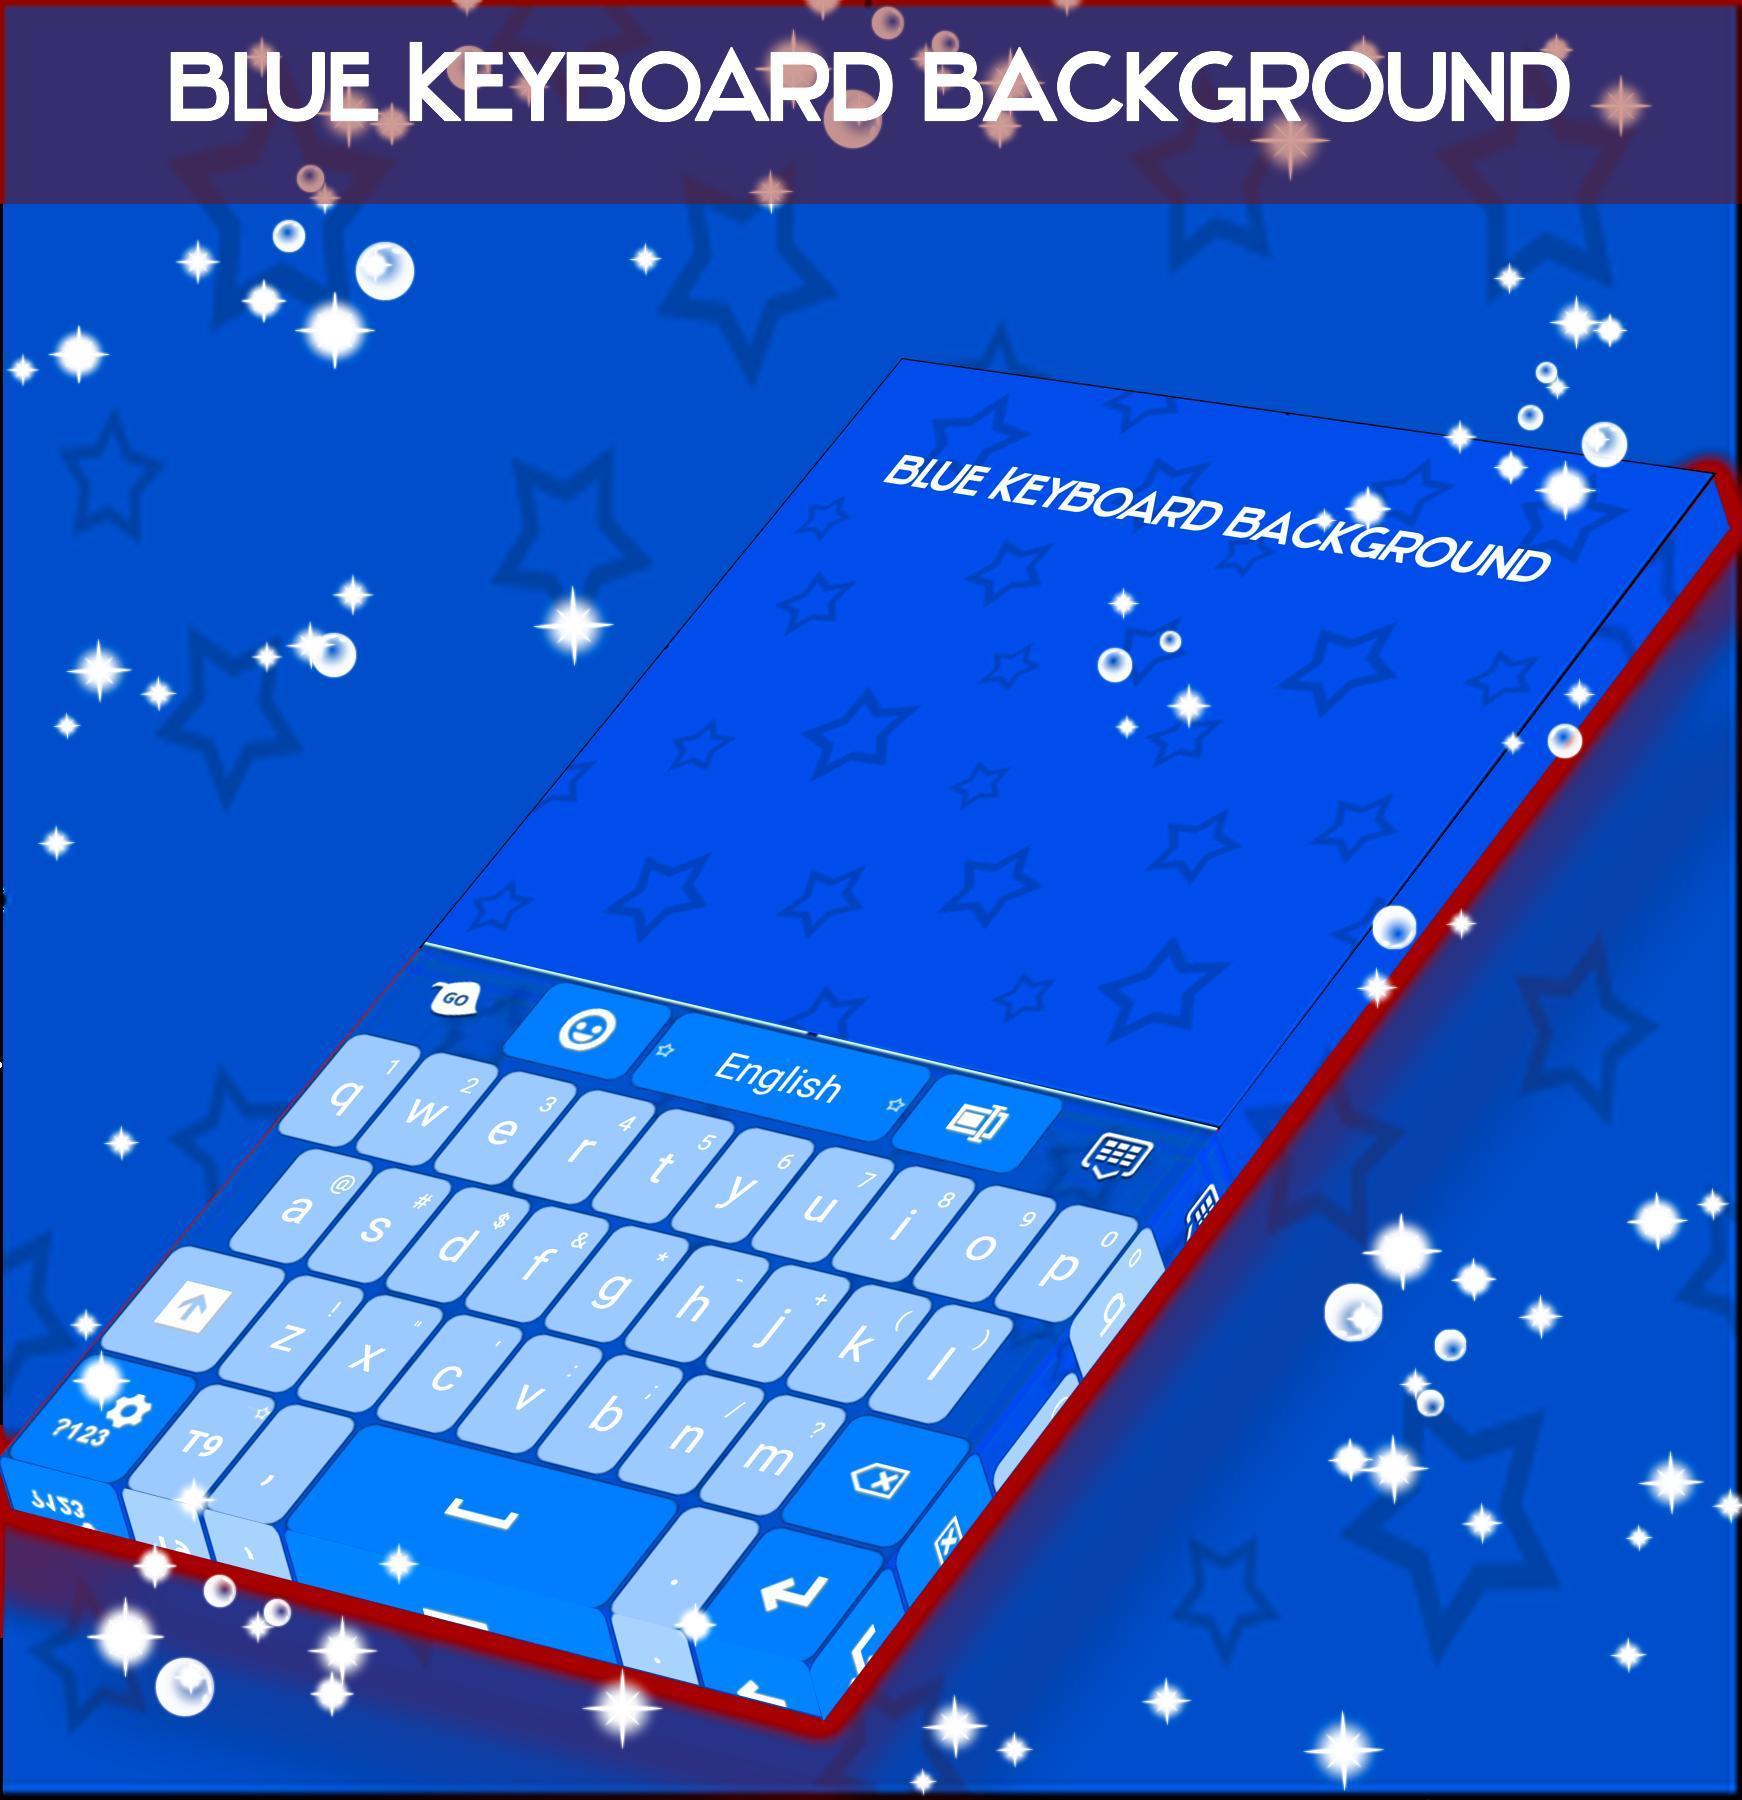 Nền Bàn phím màu xanh - Nếu bạn yêu thích màu xanh, chiếc bàn phím màu xanh sẽ làm bạn mê mẩn ngay từ cái nhìn đầu tiên. Chúng tôi có nhiều loại bàn phím với nền màu xanh độc đáo và sáng tạo với mức giá phải chăng.